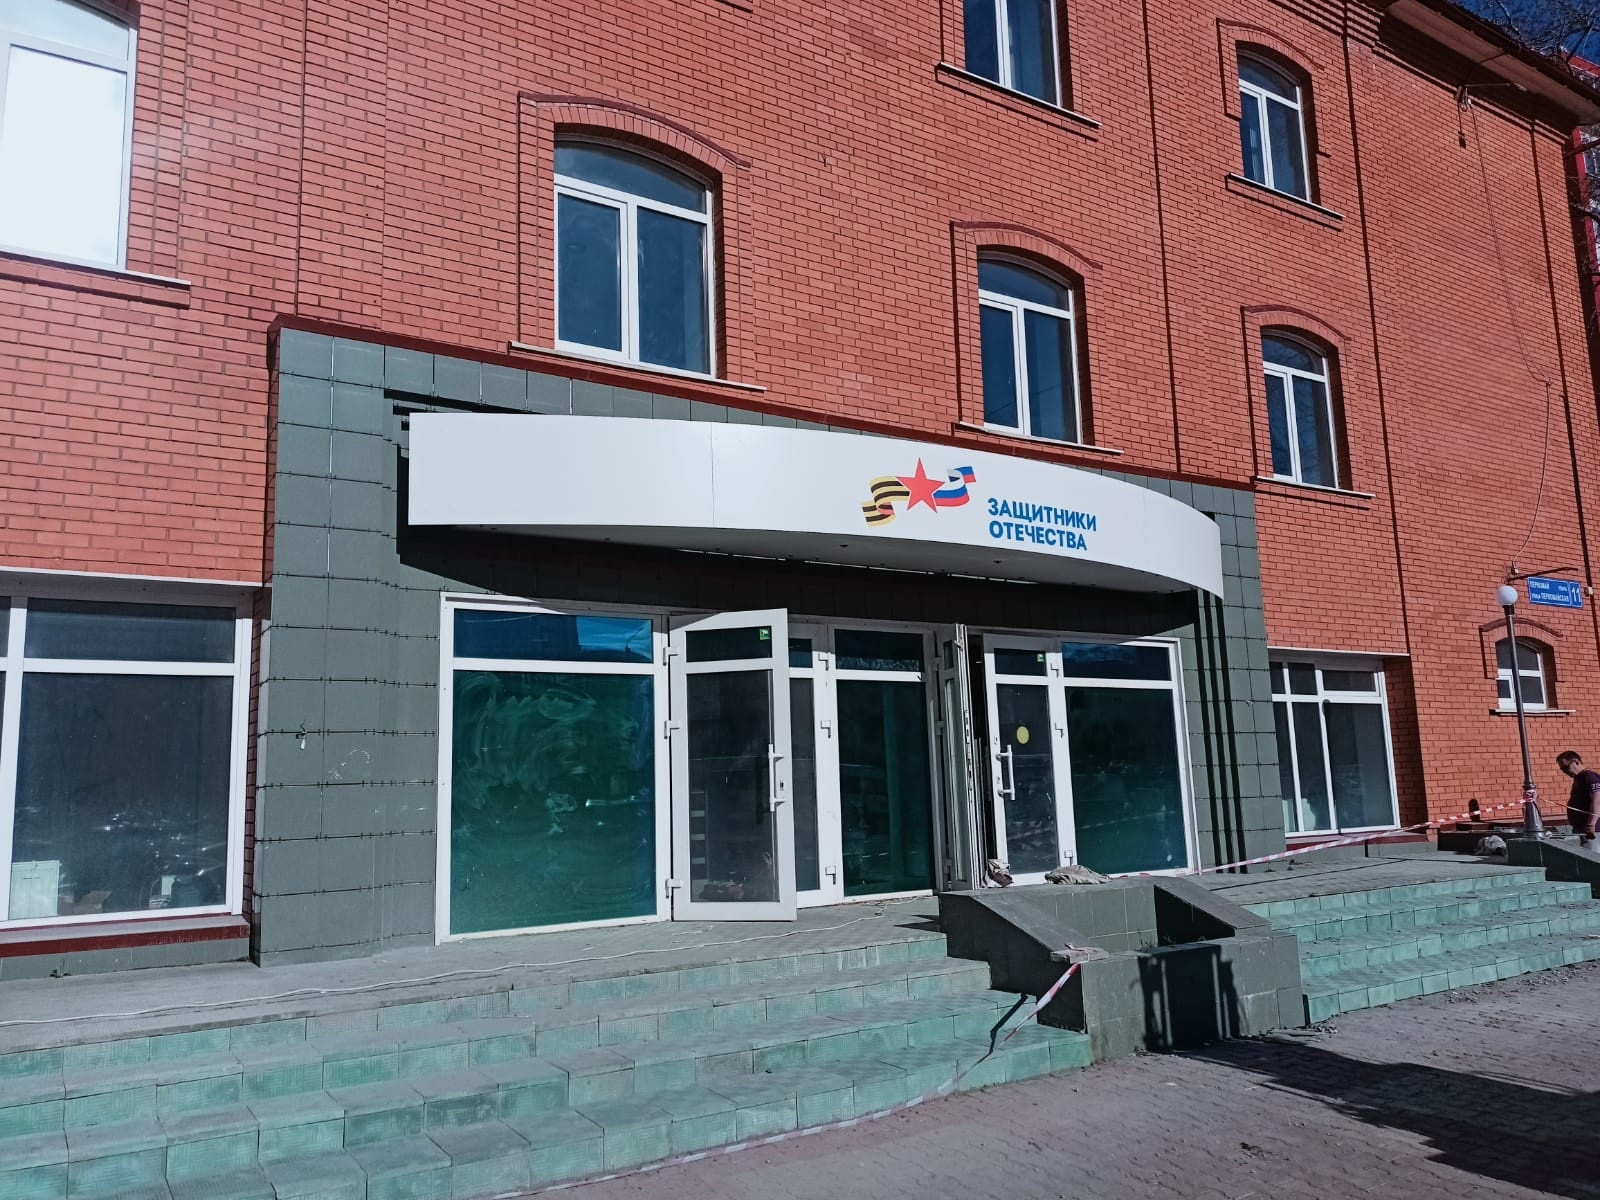 В Усть-Вымском районе жене погибшего на СВО помогают получить квартиру за счет государства